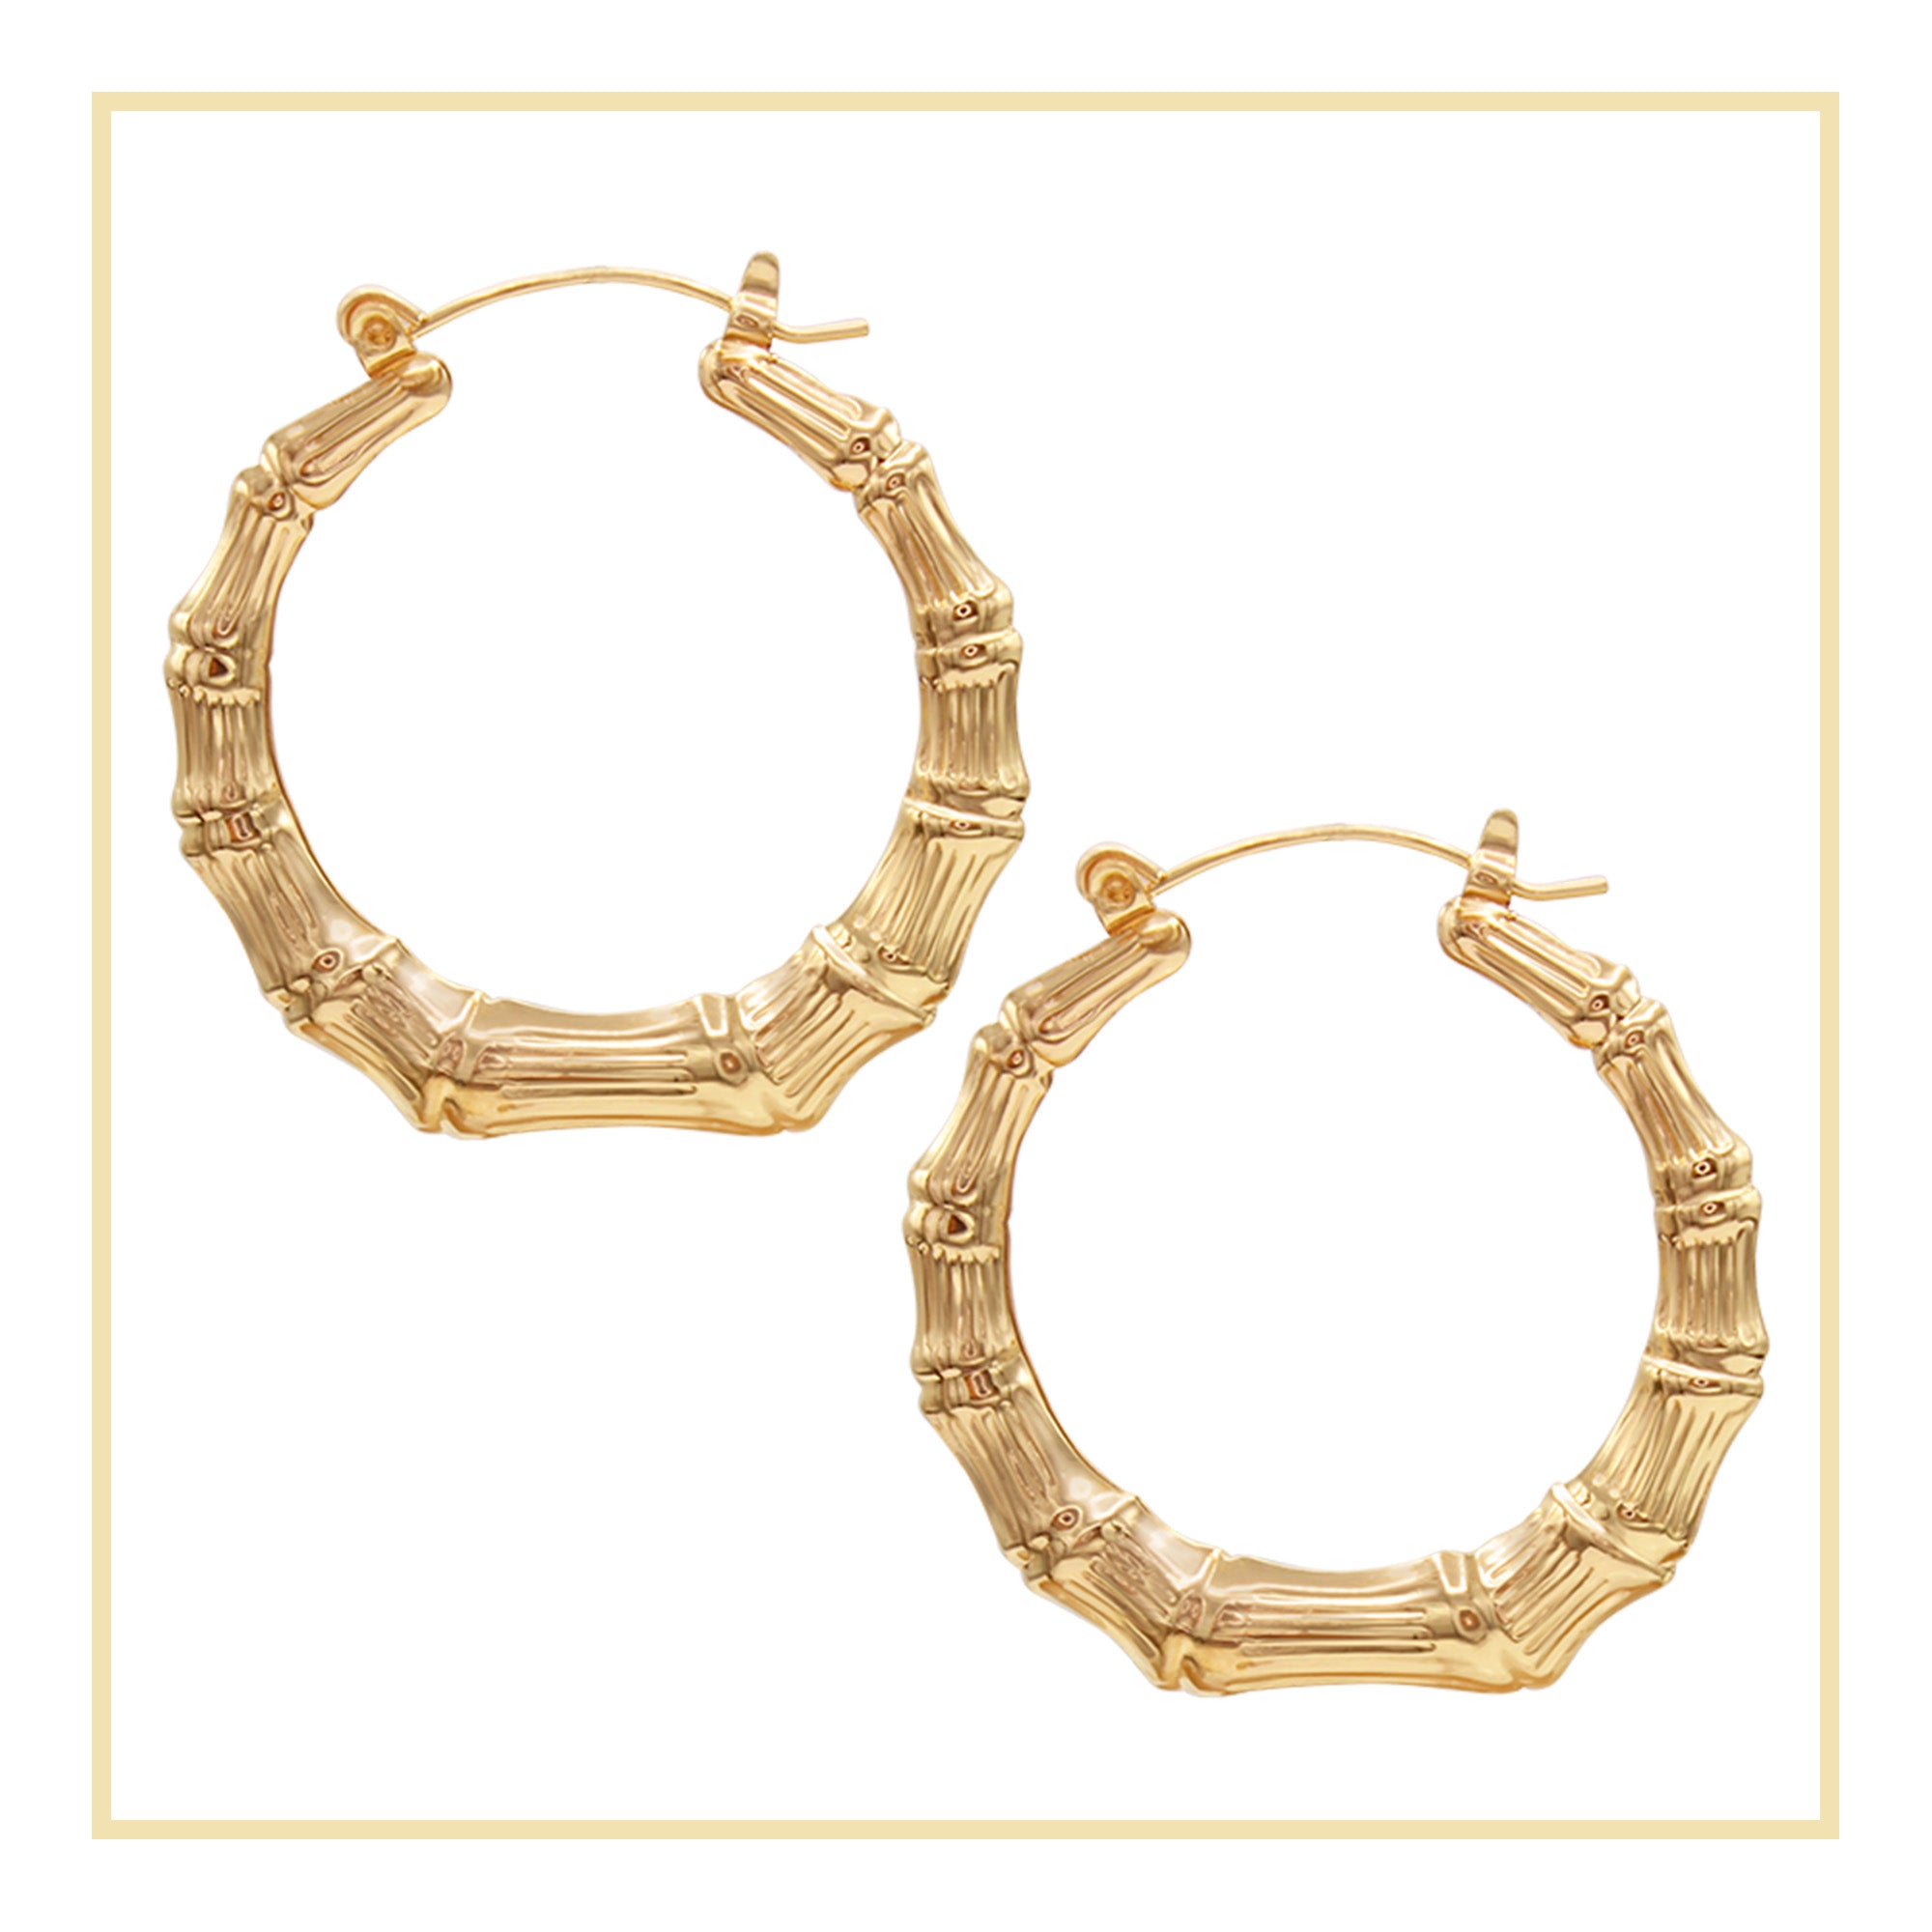 Bamboo Hoop Earrings 14K Gold Plated Women Jewelry 40 mm